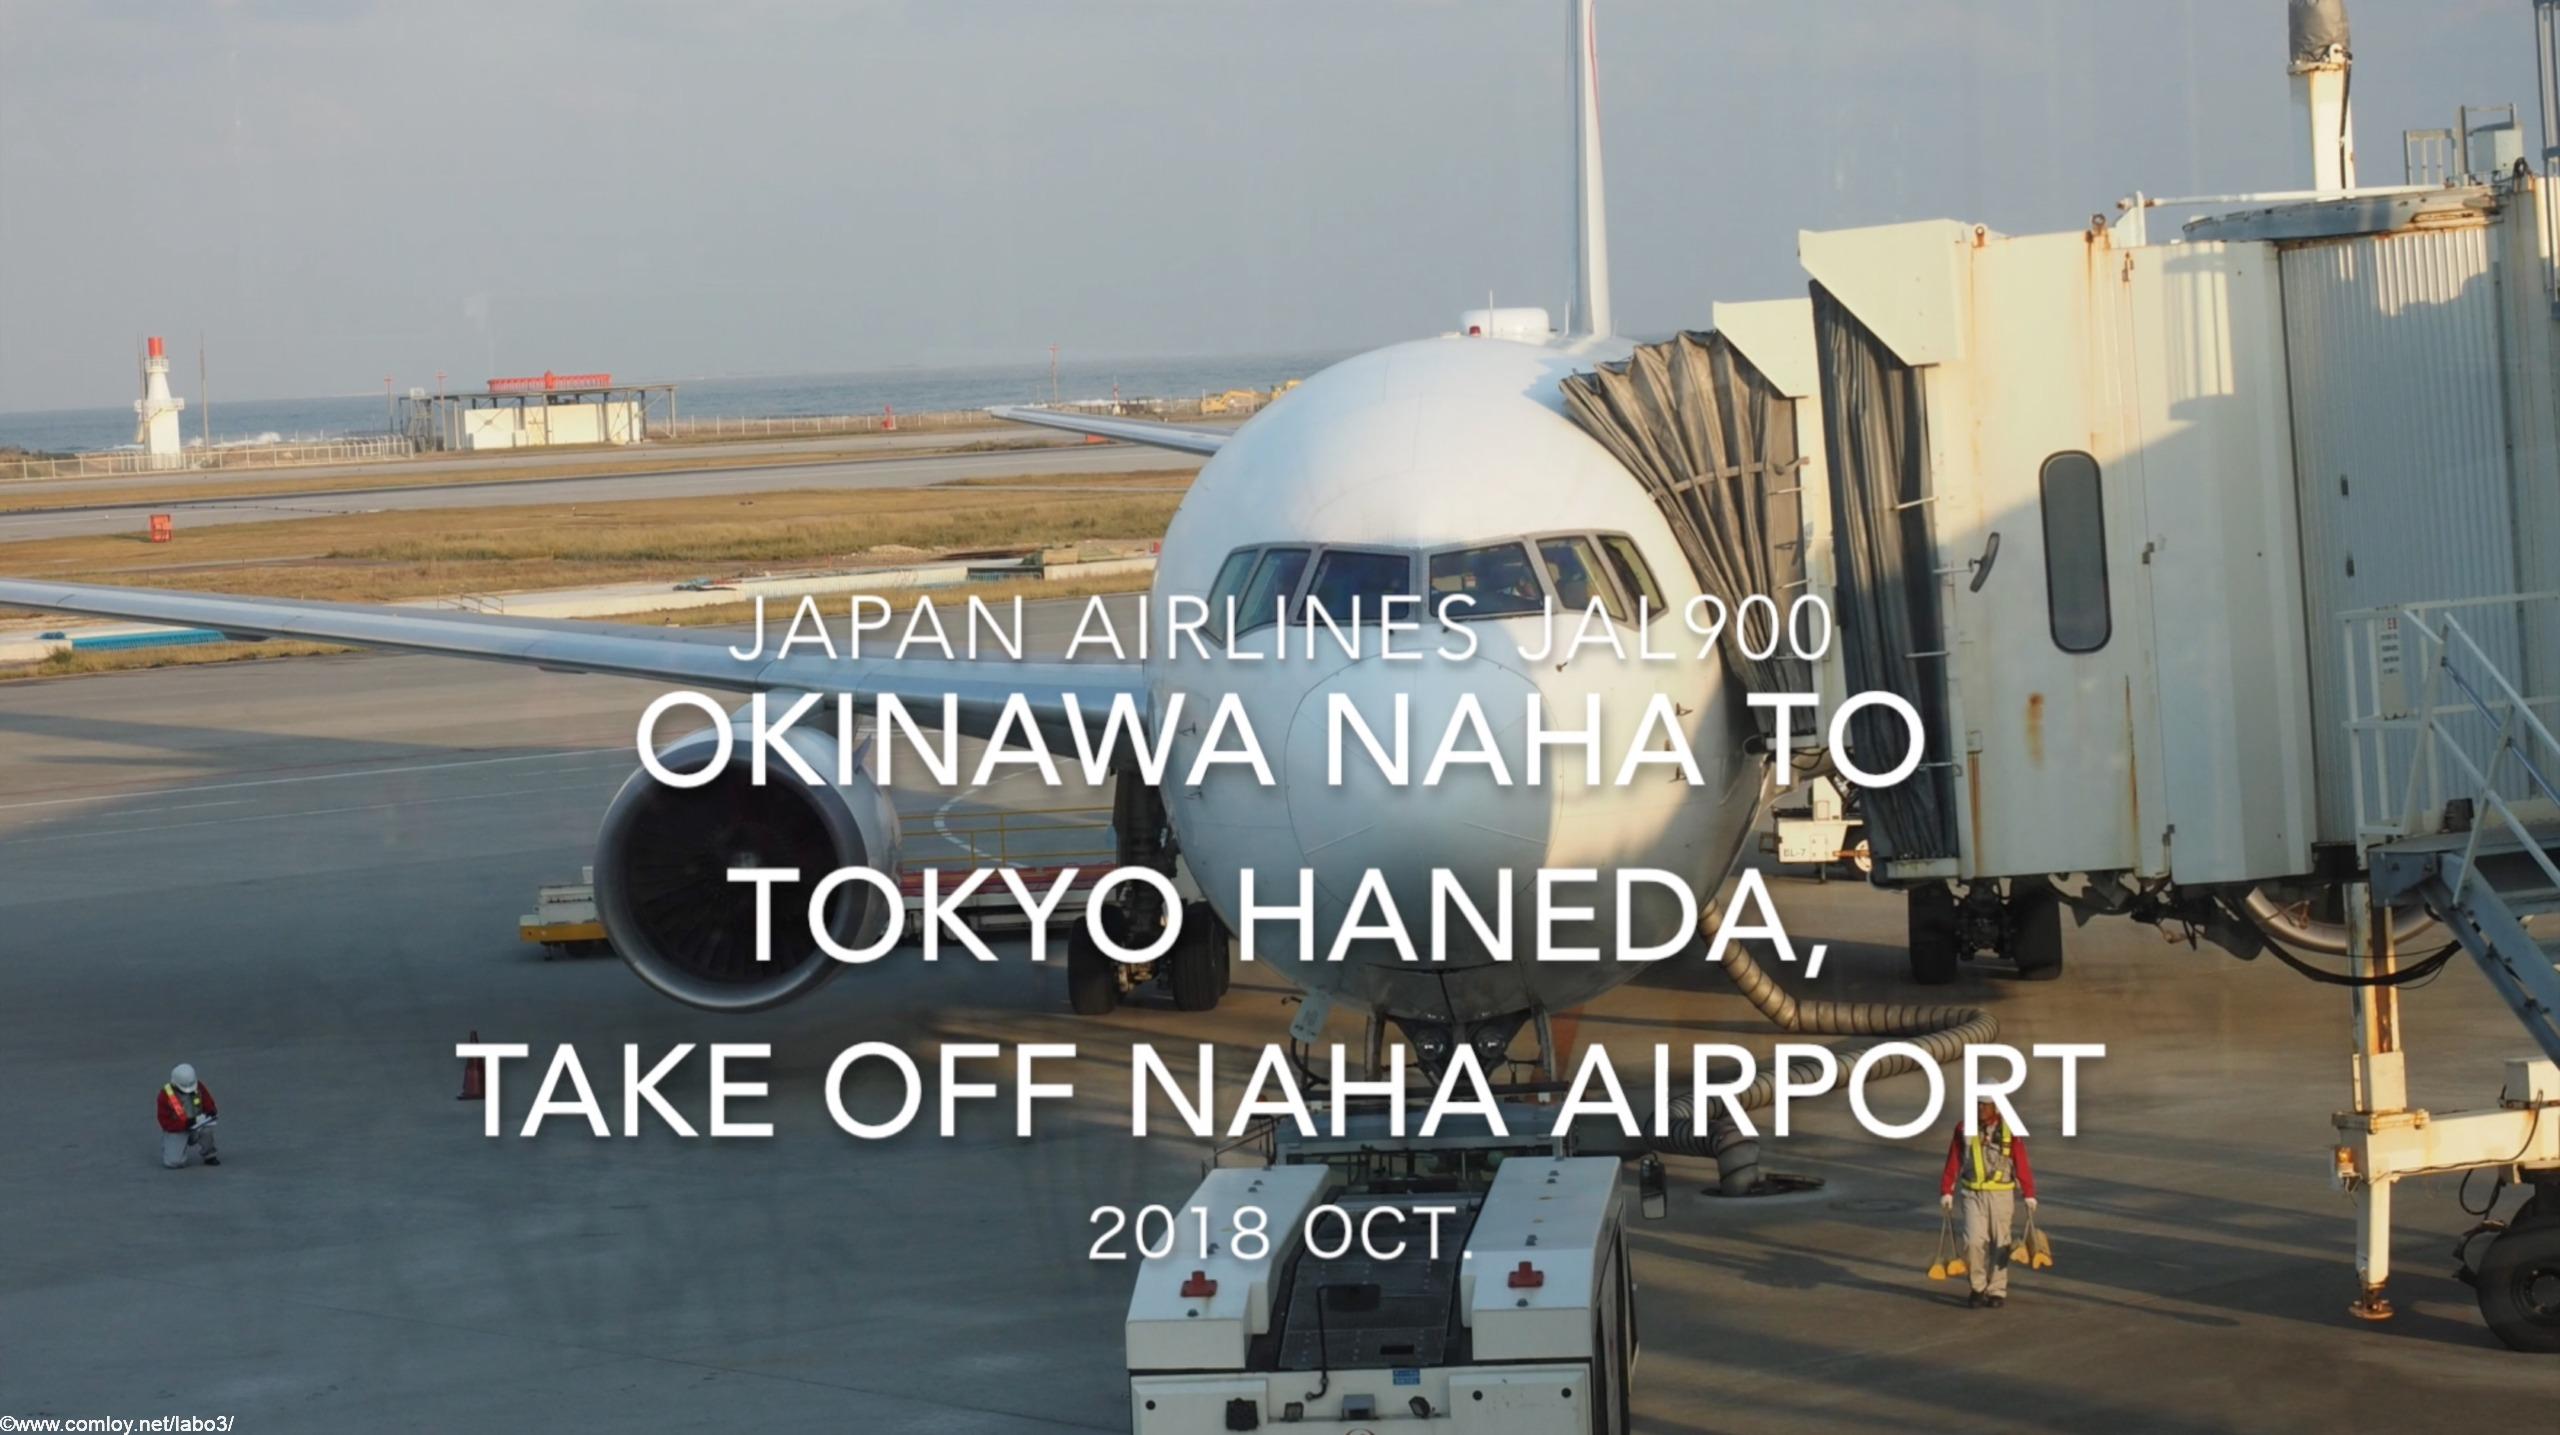 【機内から離着陸映像】2018 OCT Japan Airlines JAL900 OKINAWA NAHA to TOKYO HANEDA, Take off OKINAWA NAHA airport 日本航空 那覇 - 羽田 那覇空港離陸